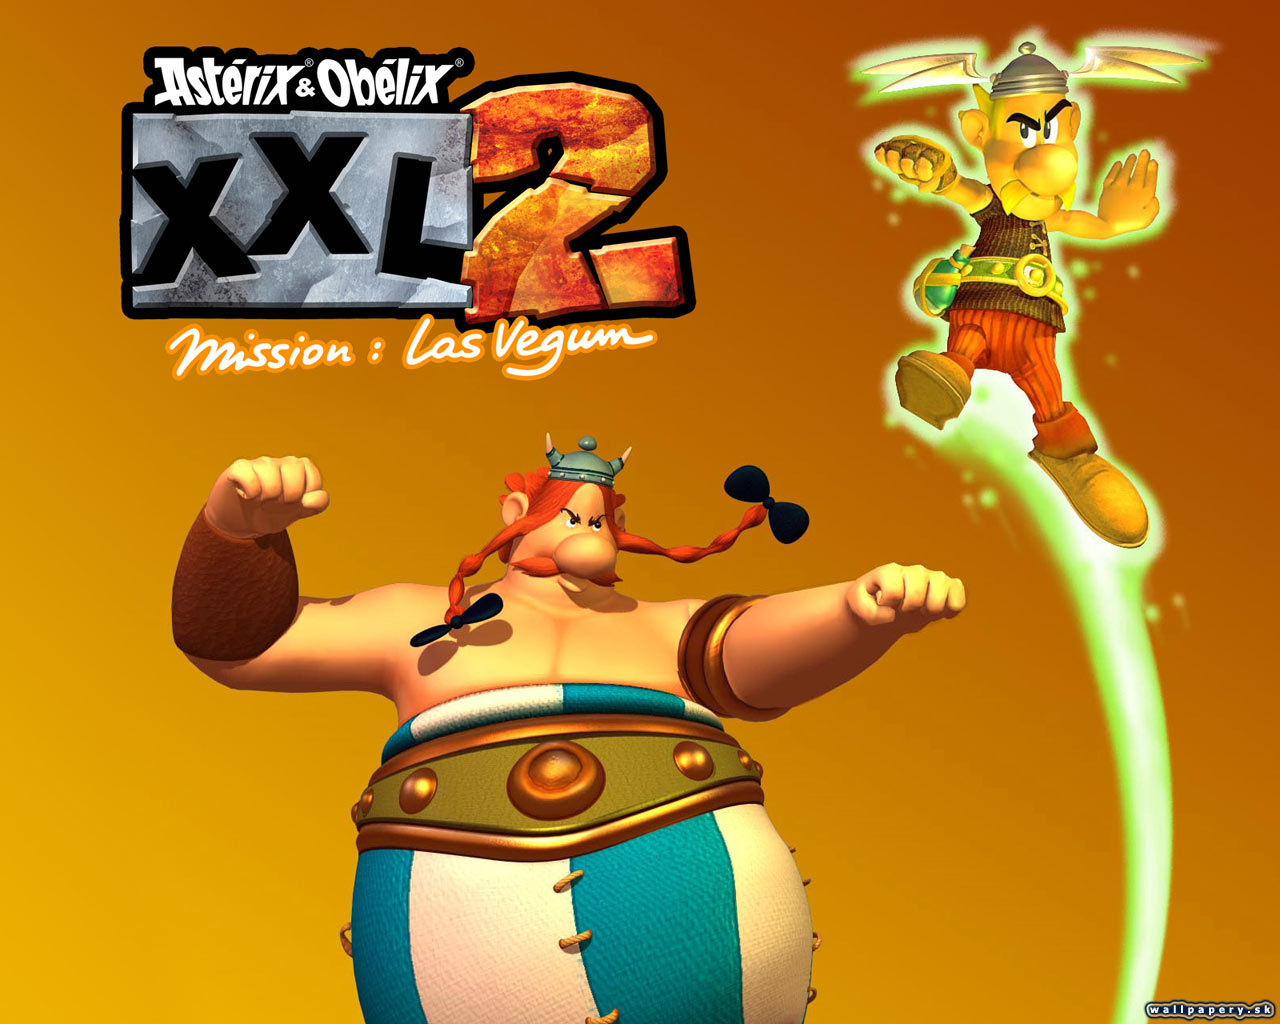 Asterix & Obelix XXL 2: Mission Las Vegum - wallpaper 5